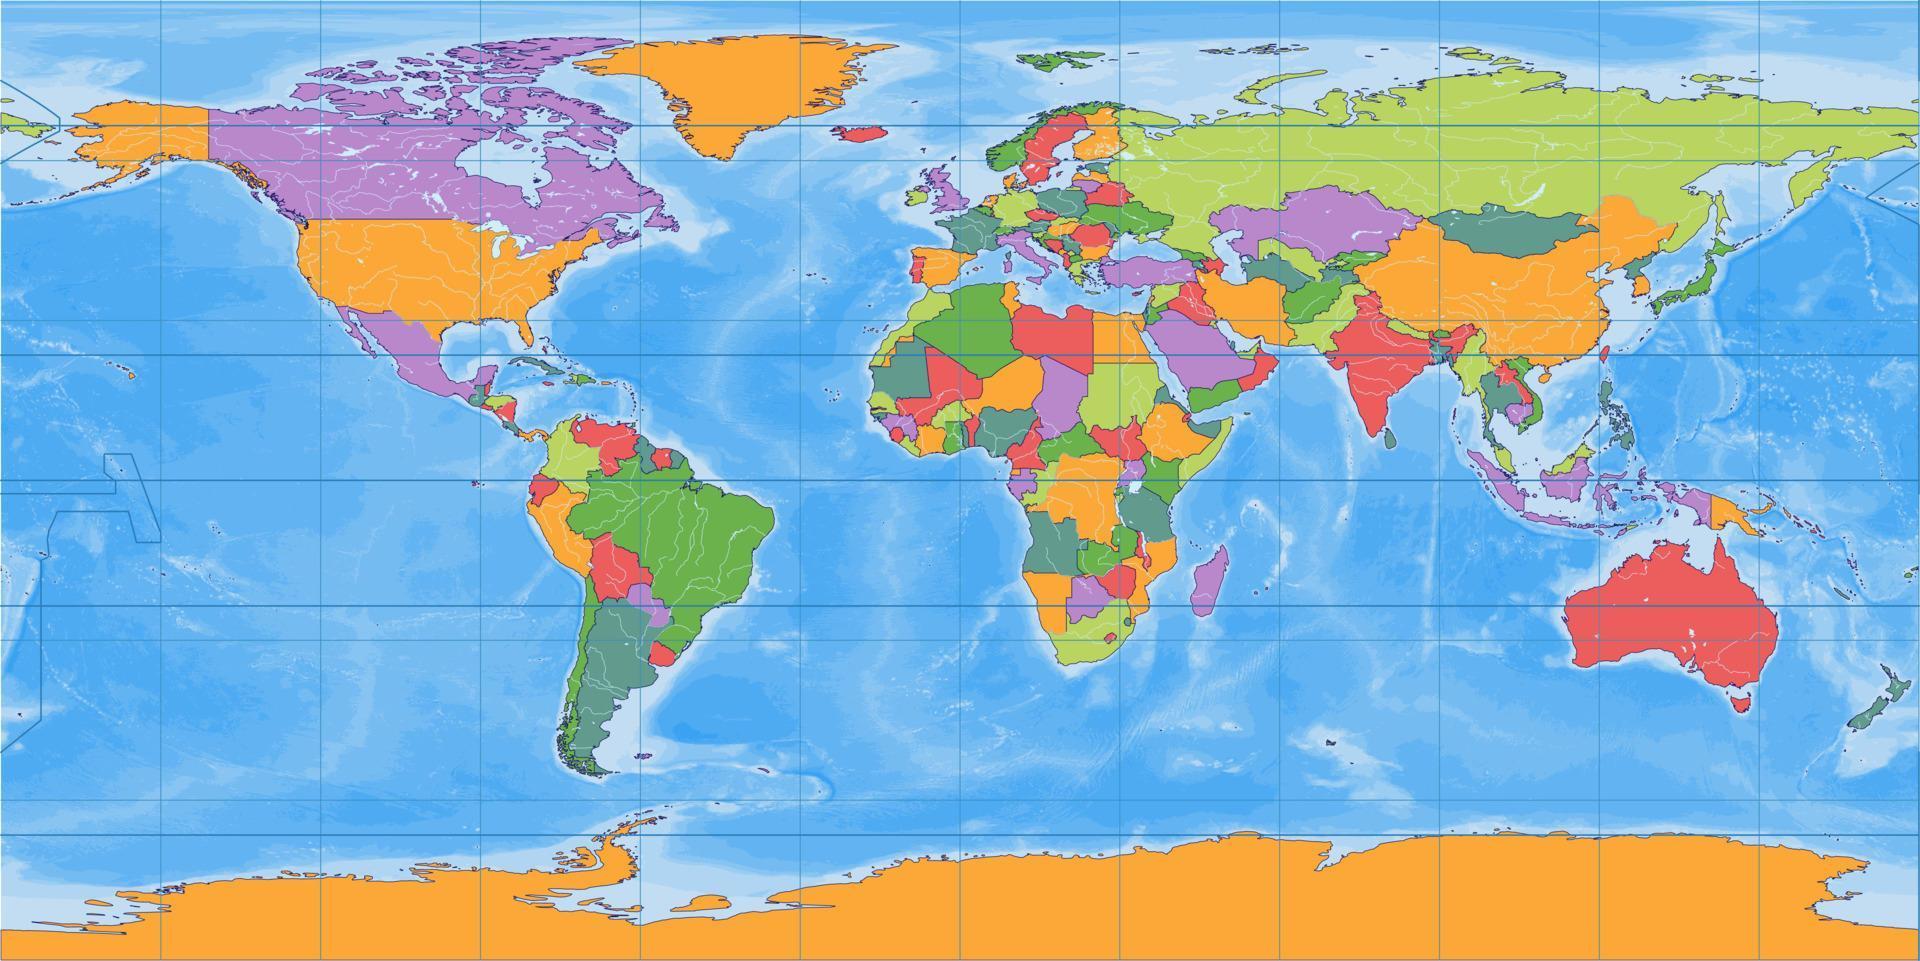 projeção equiretangular do mapa do mundo em branco político vetor